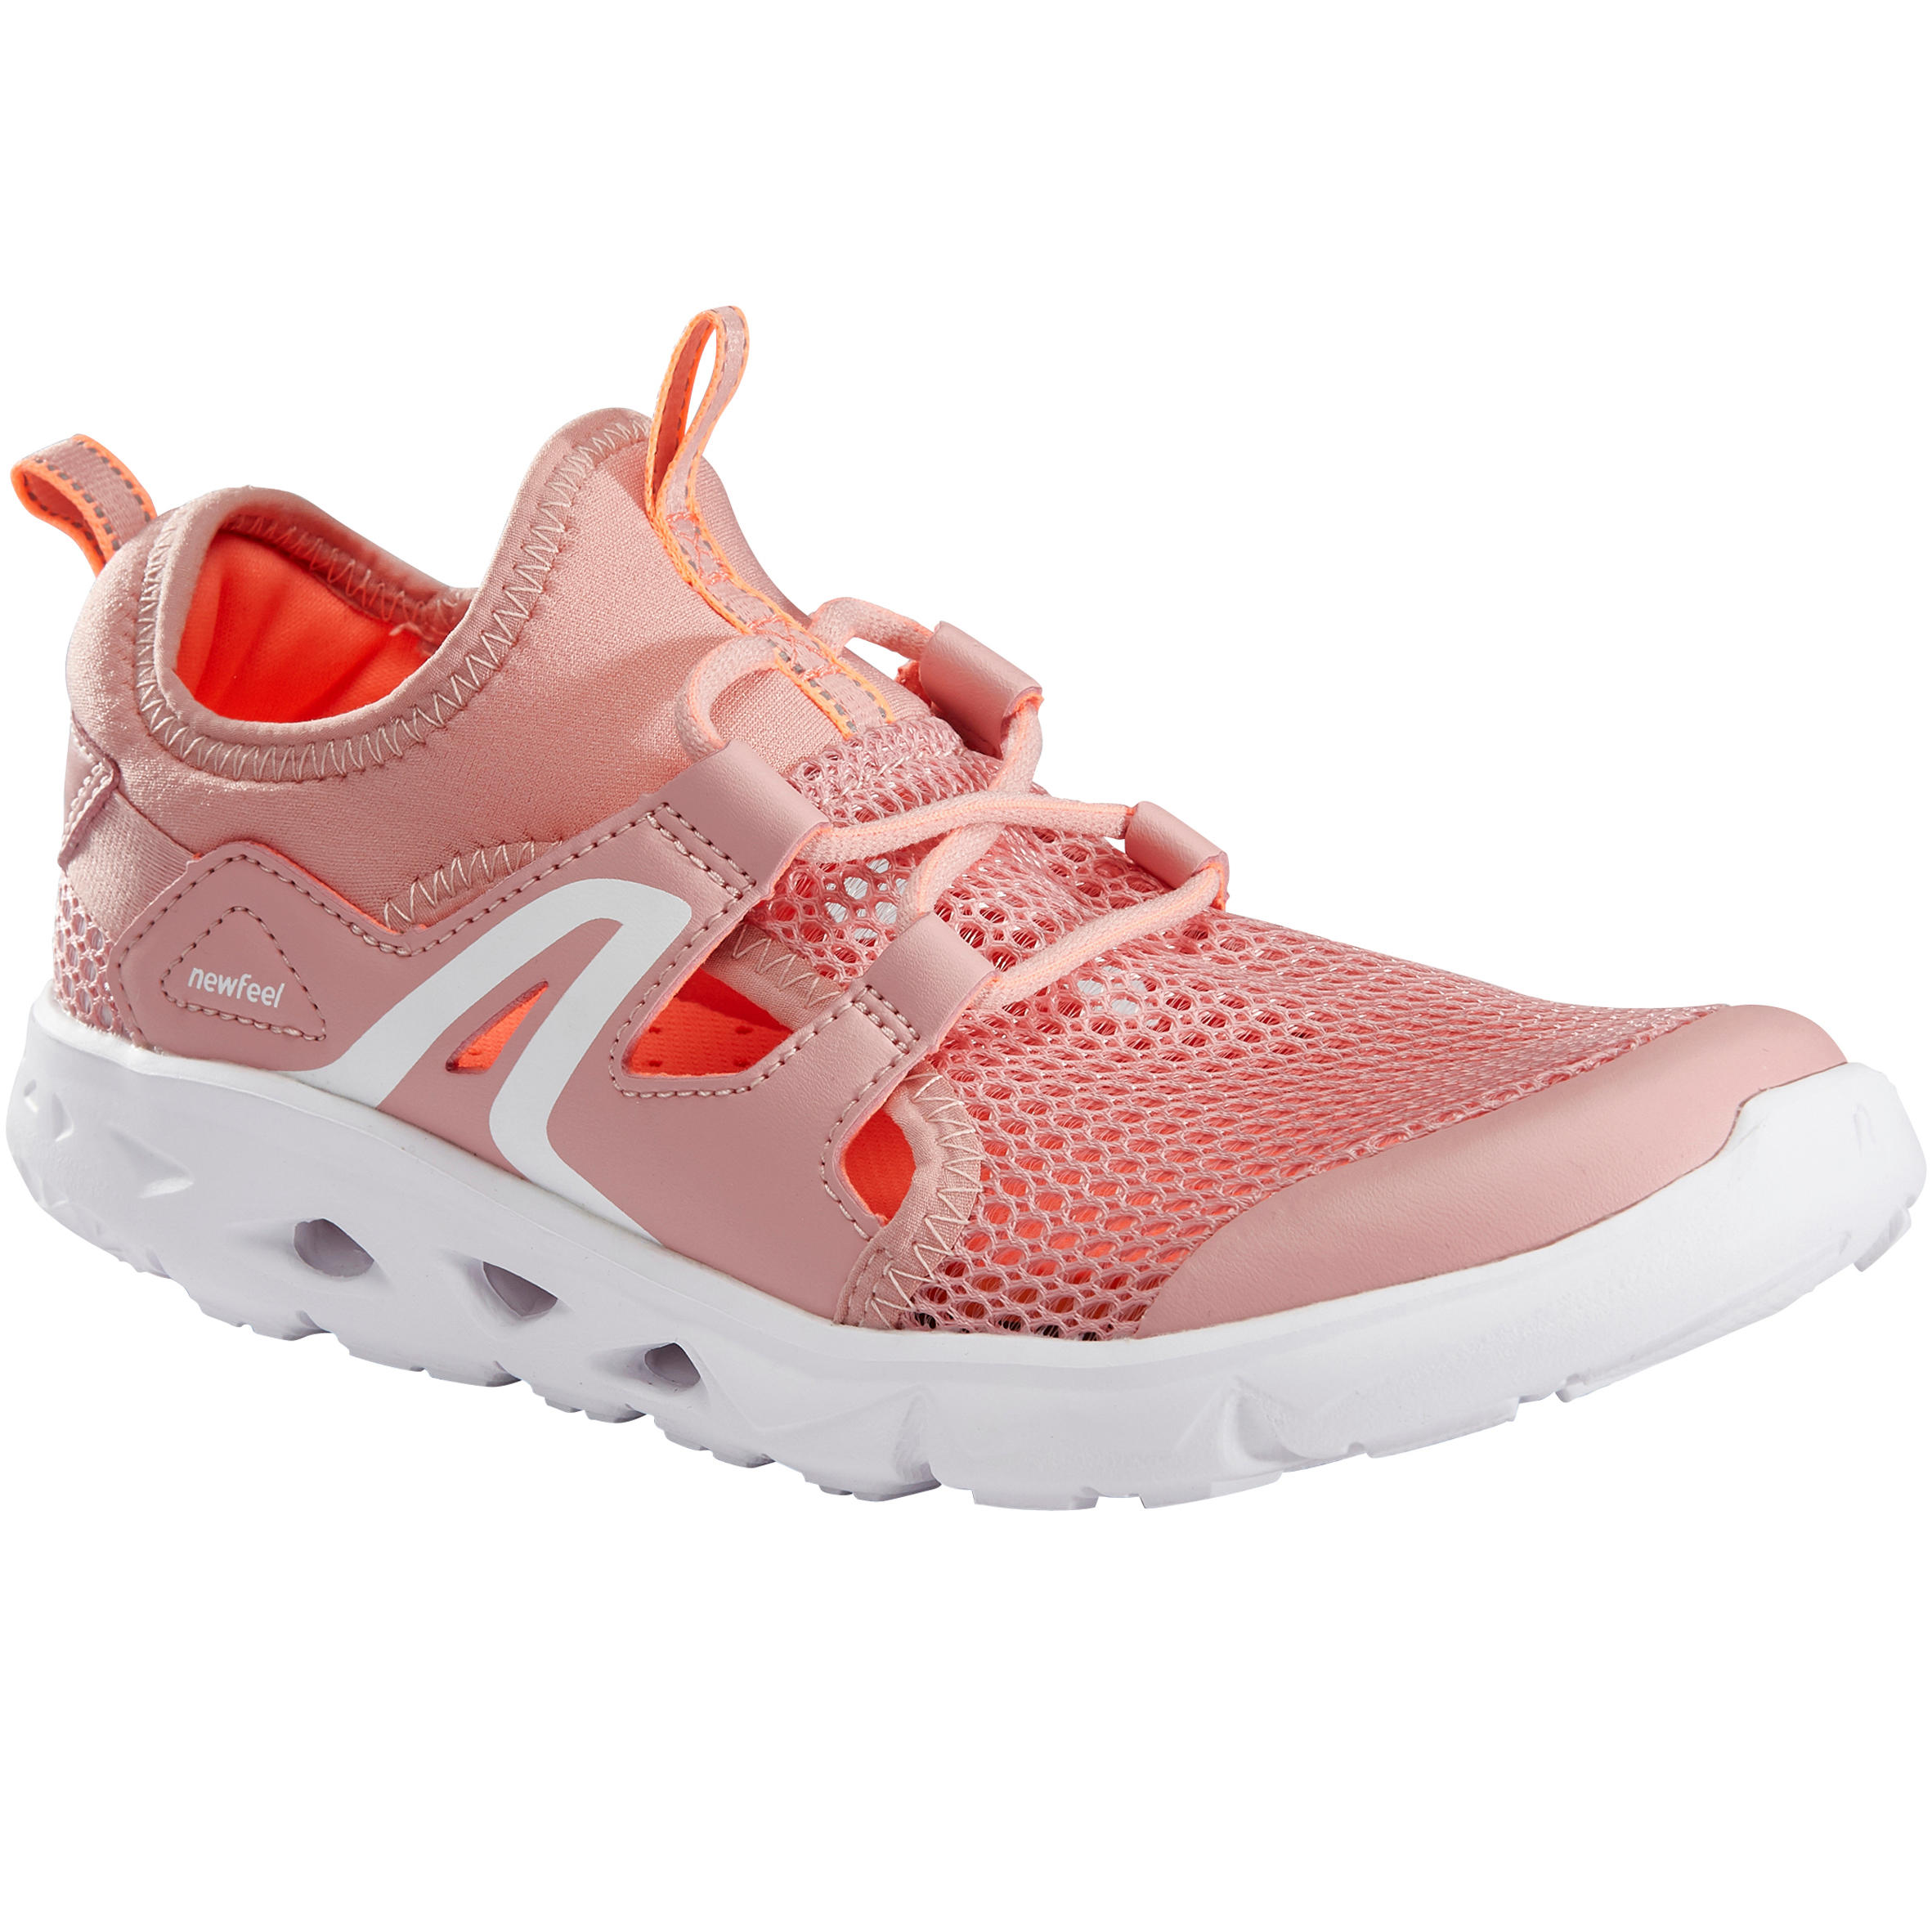 DECATHLON Kids' Walking Shoes PW 500 Fresh - Pink